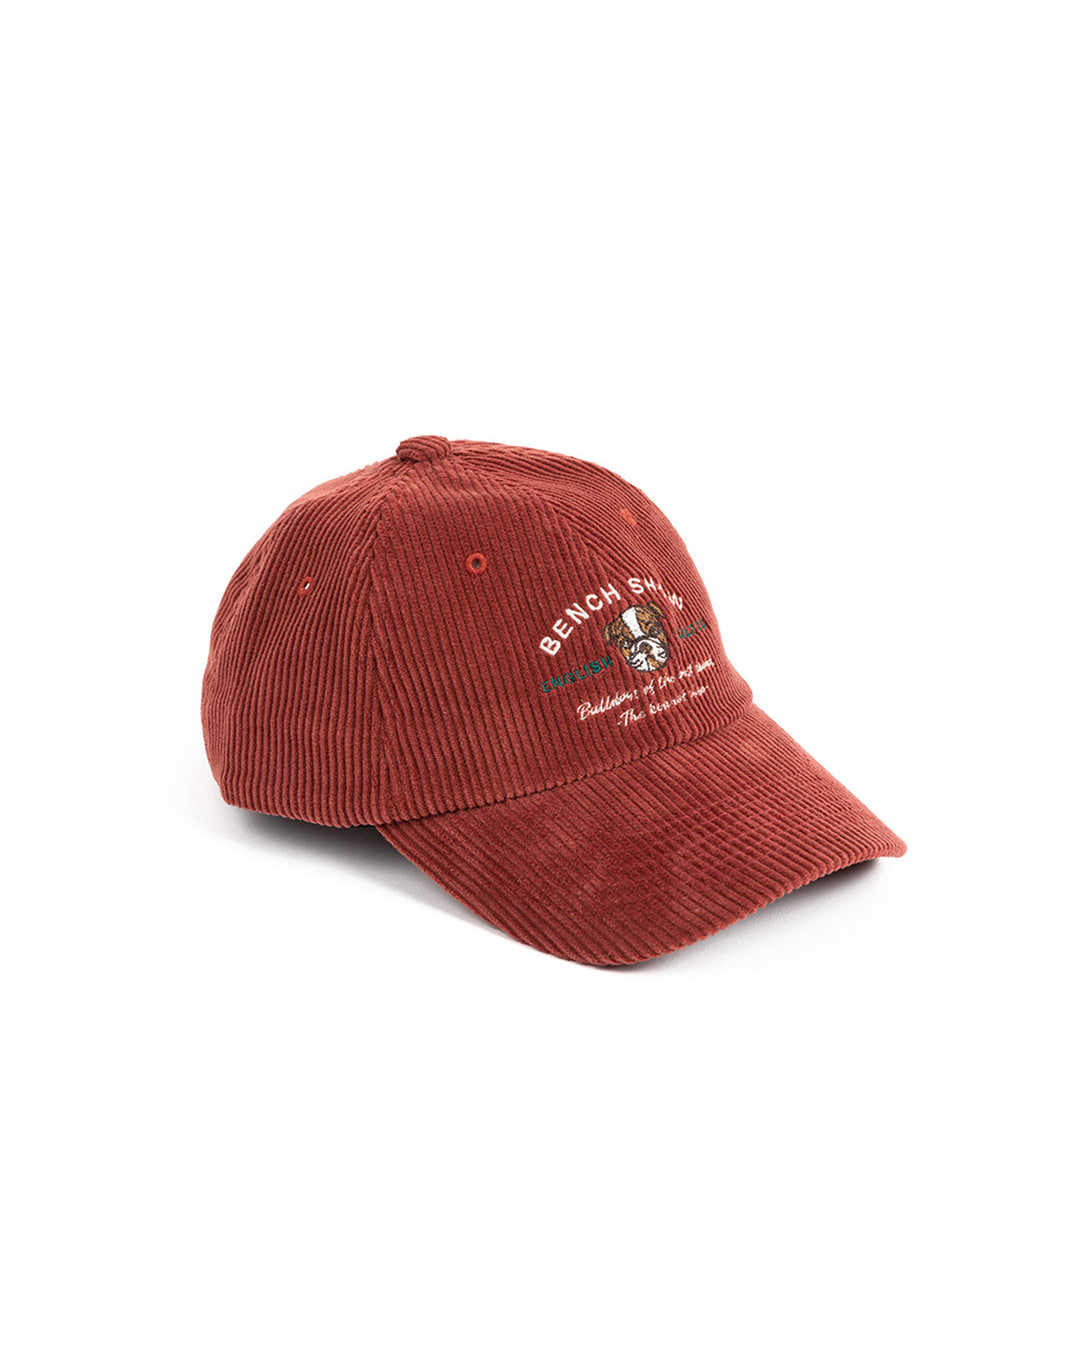 CORDUROY KENNEL CLUB CAP (brick red)